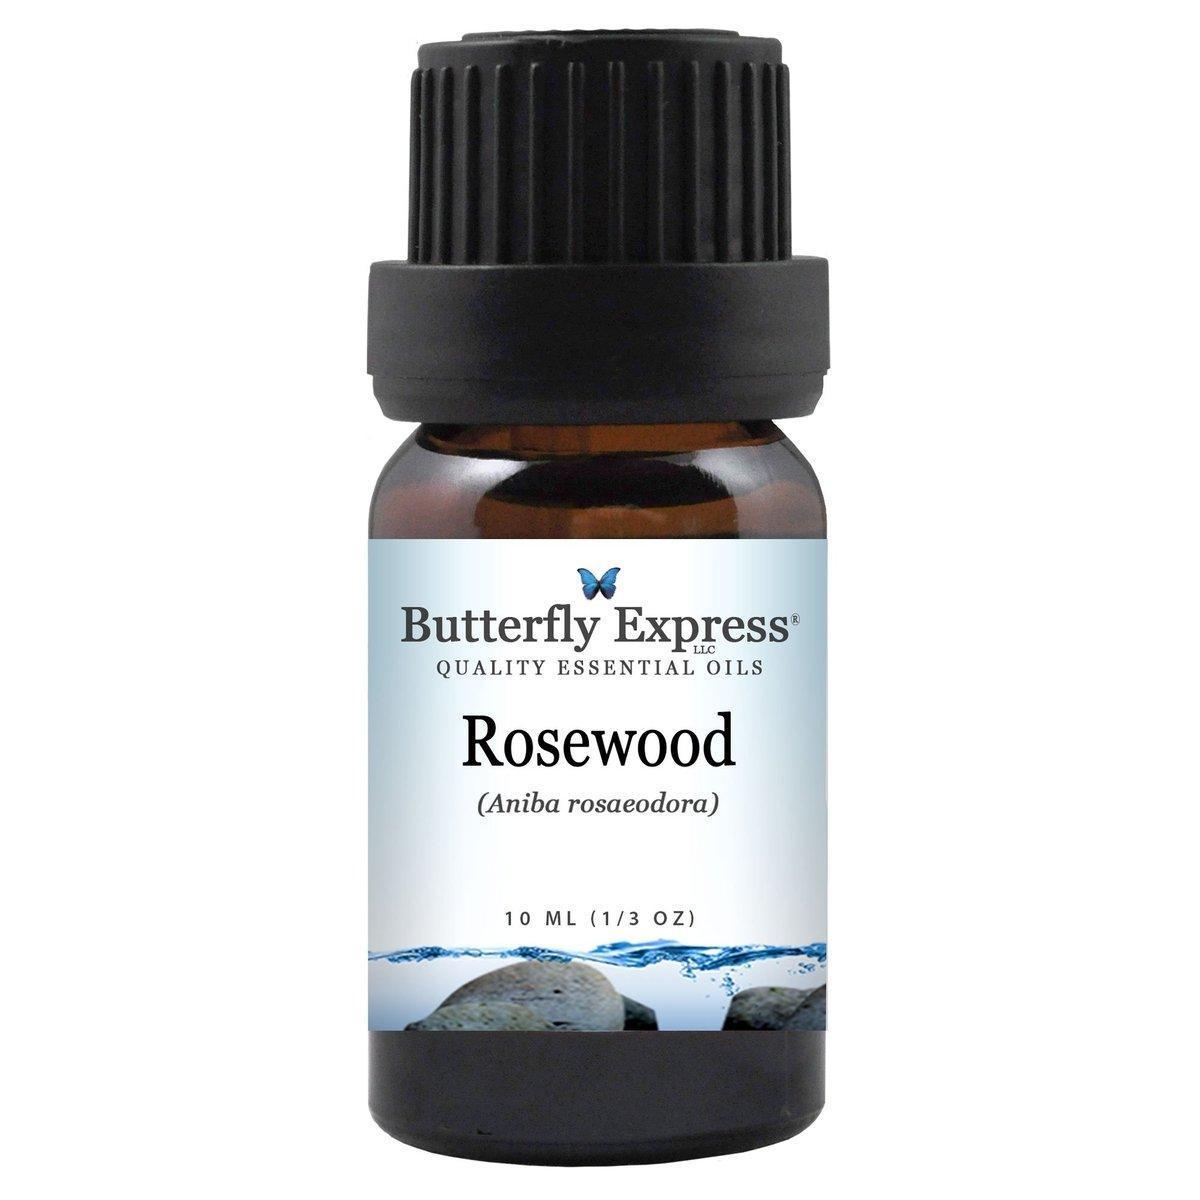 Rosewood essential oils